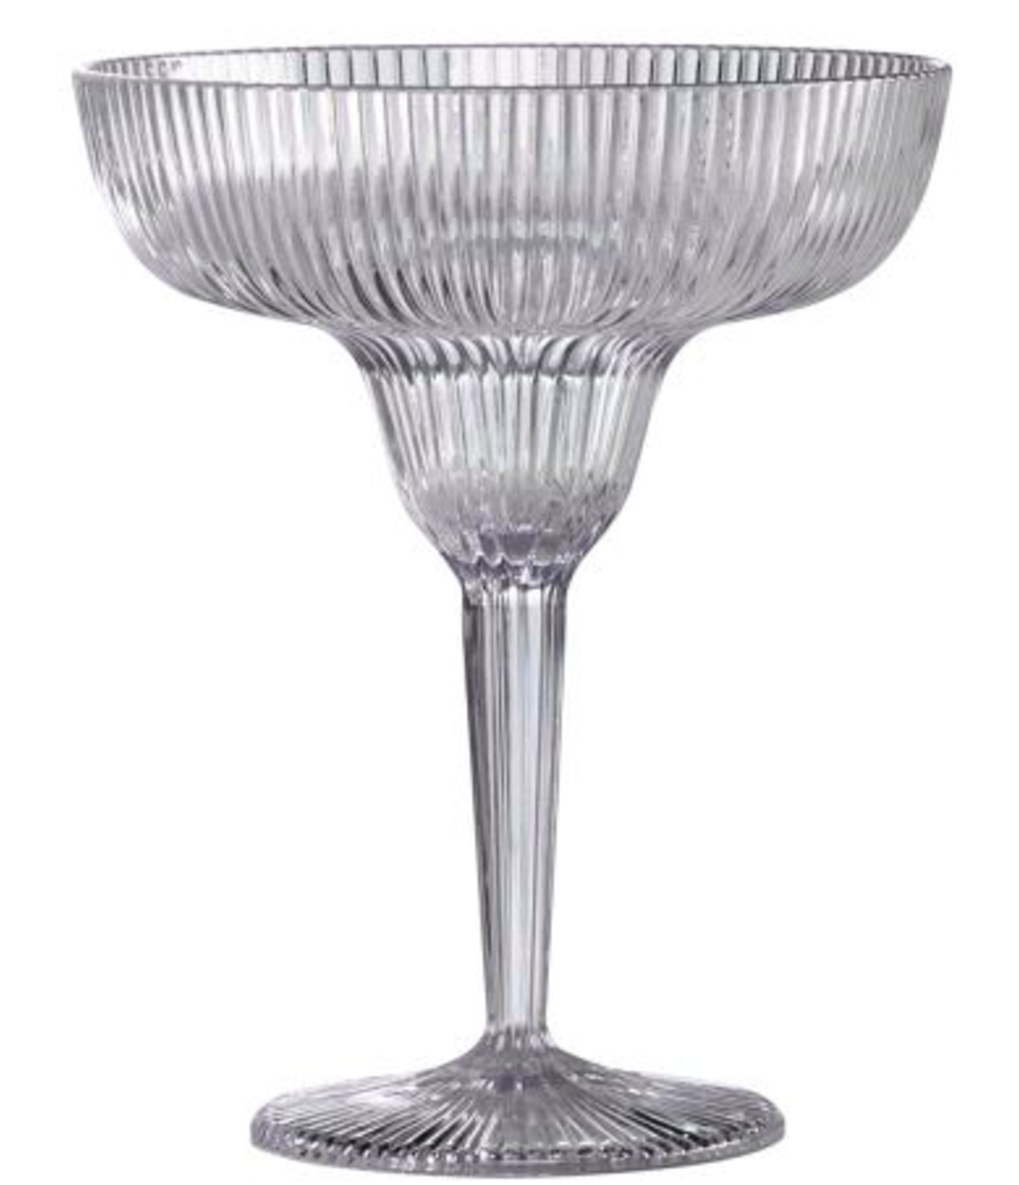 Margarita glass, RRP $5.97.